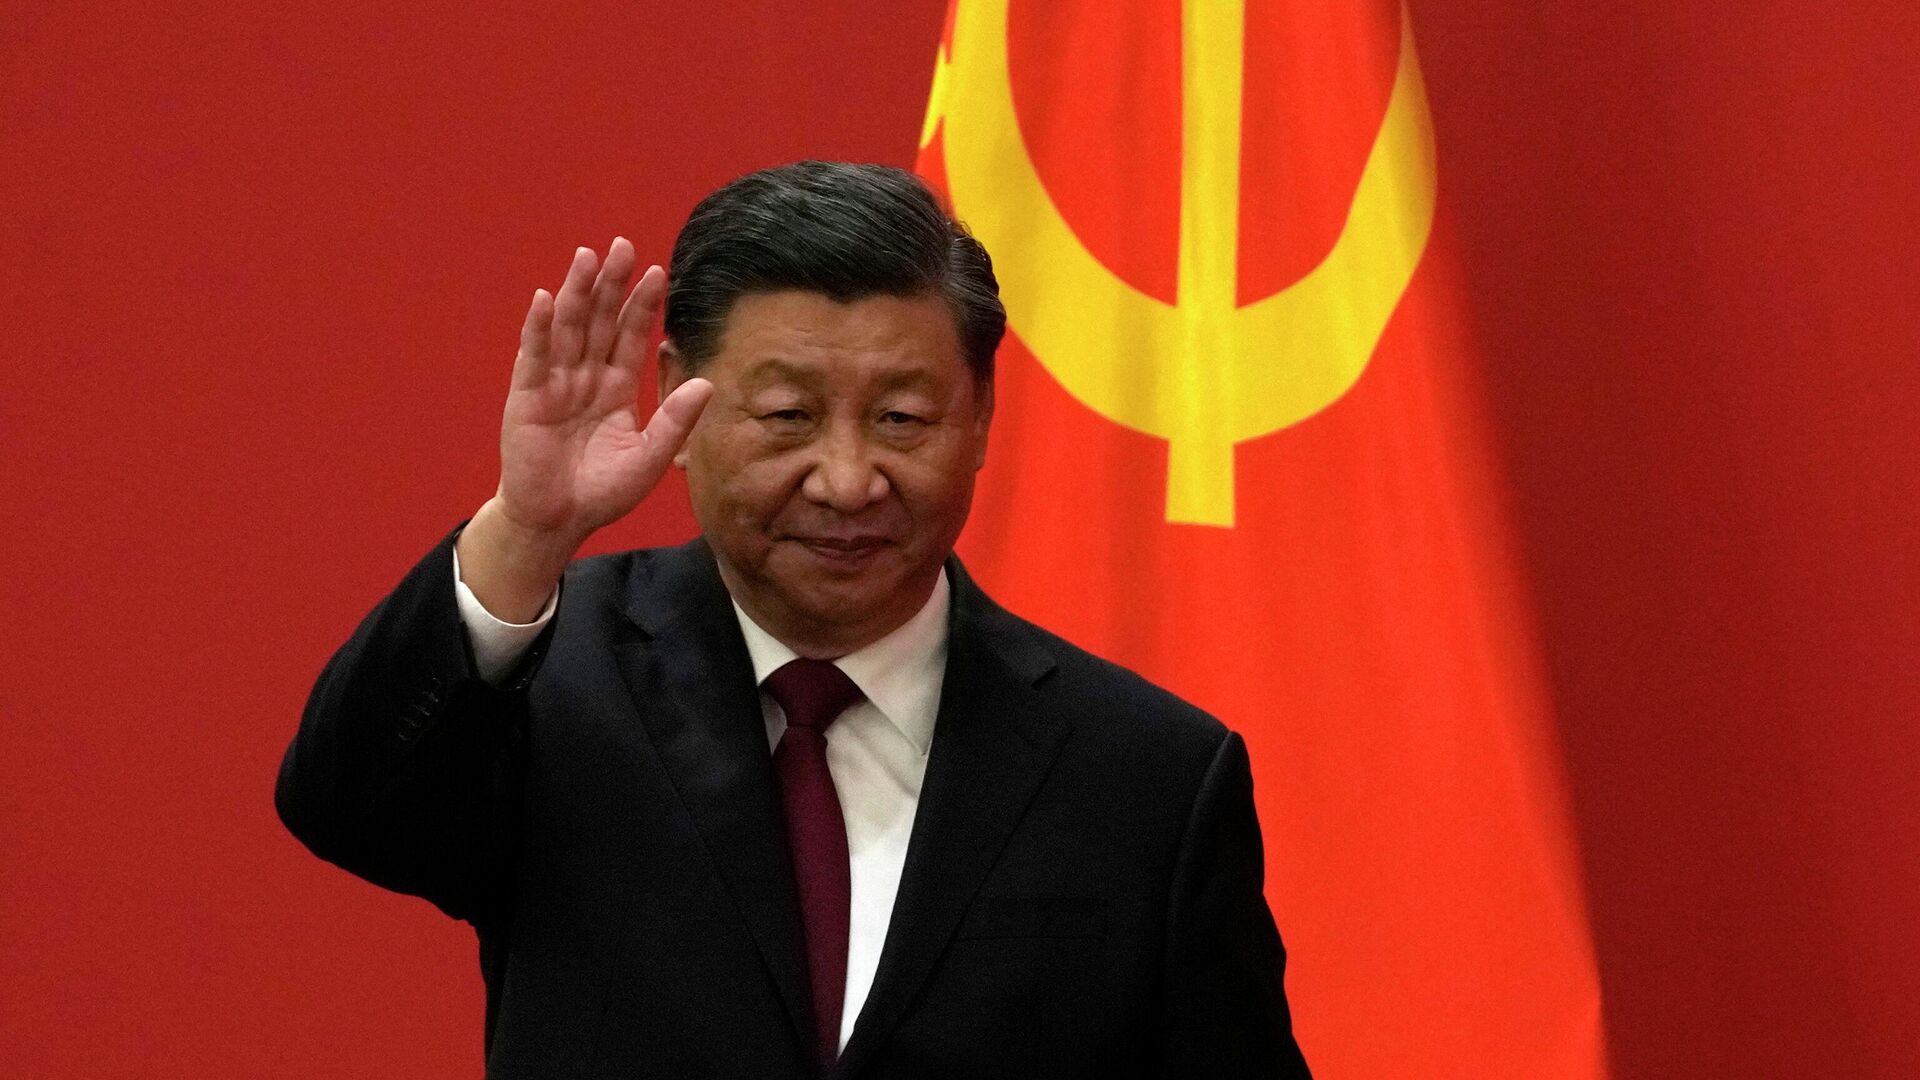 الرئيس الصيني: ليس هناك قوى يمكنها أن تعيق وتيرة التقدم التكنولوجي في الصين